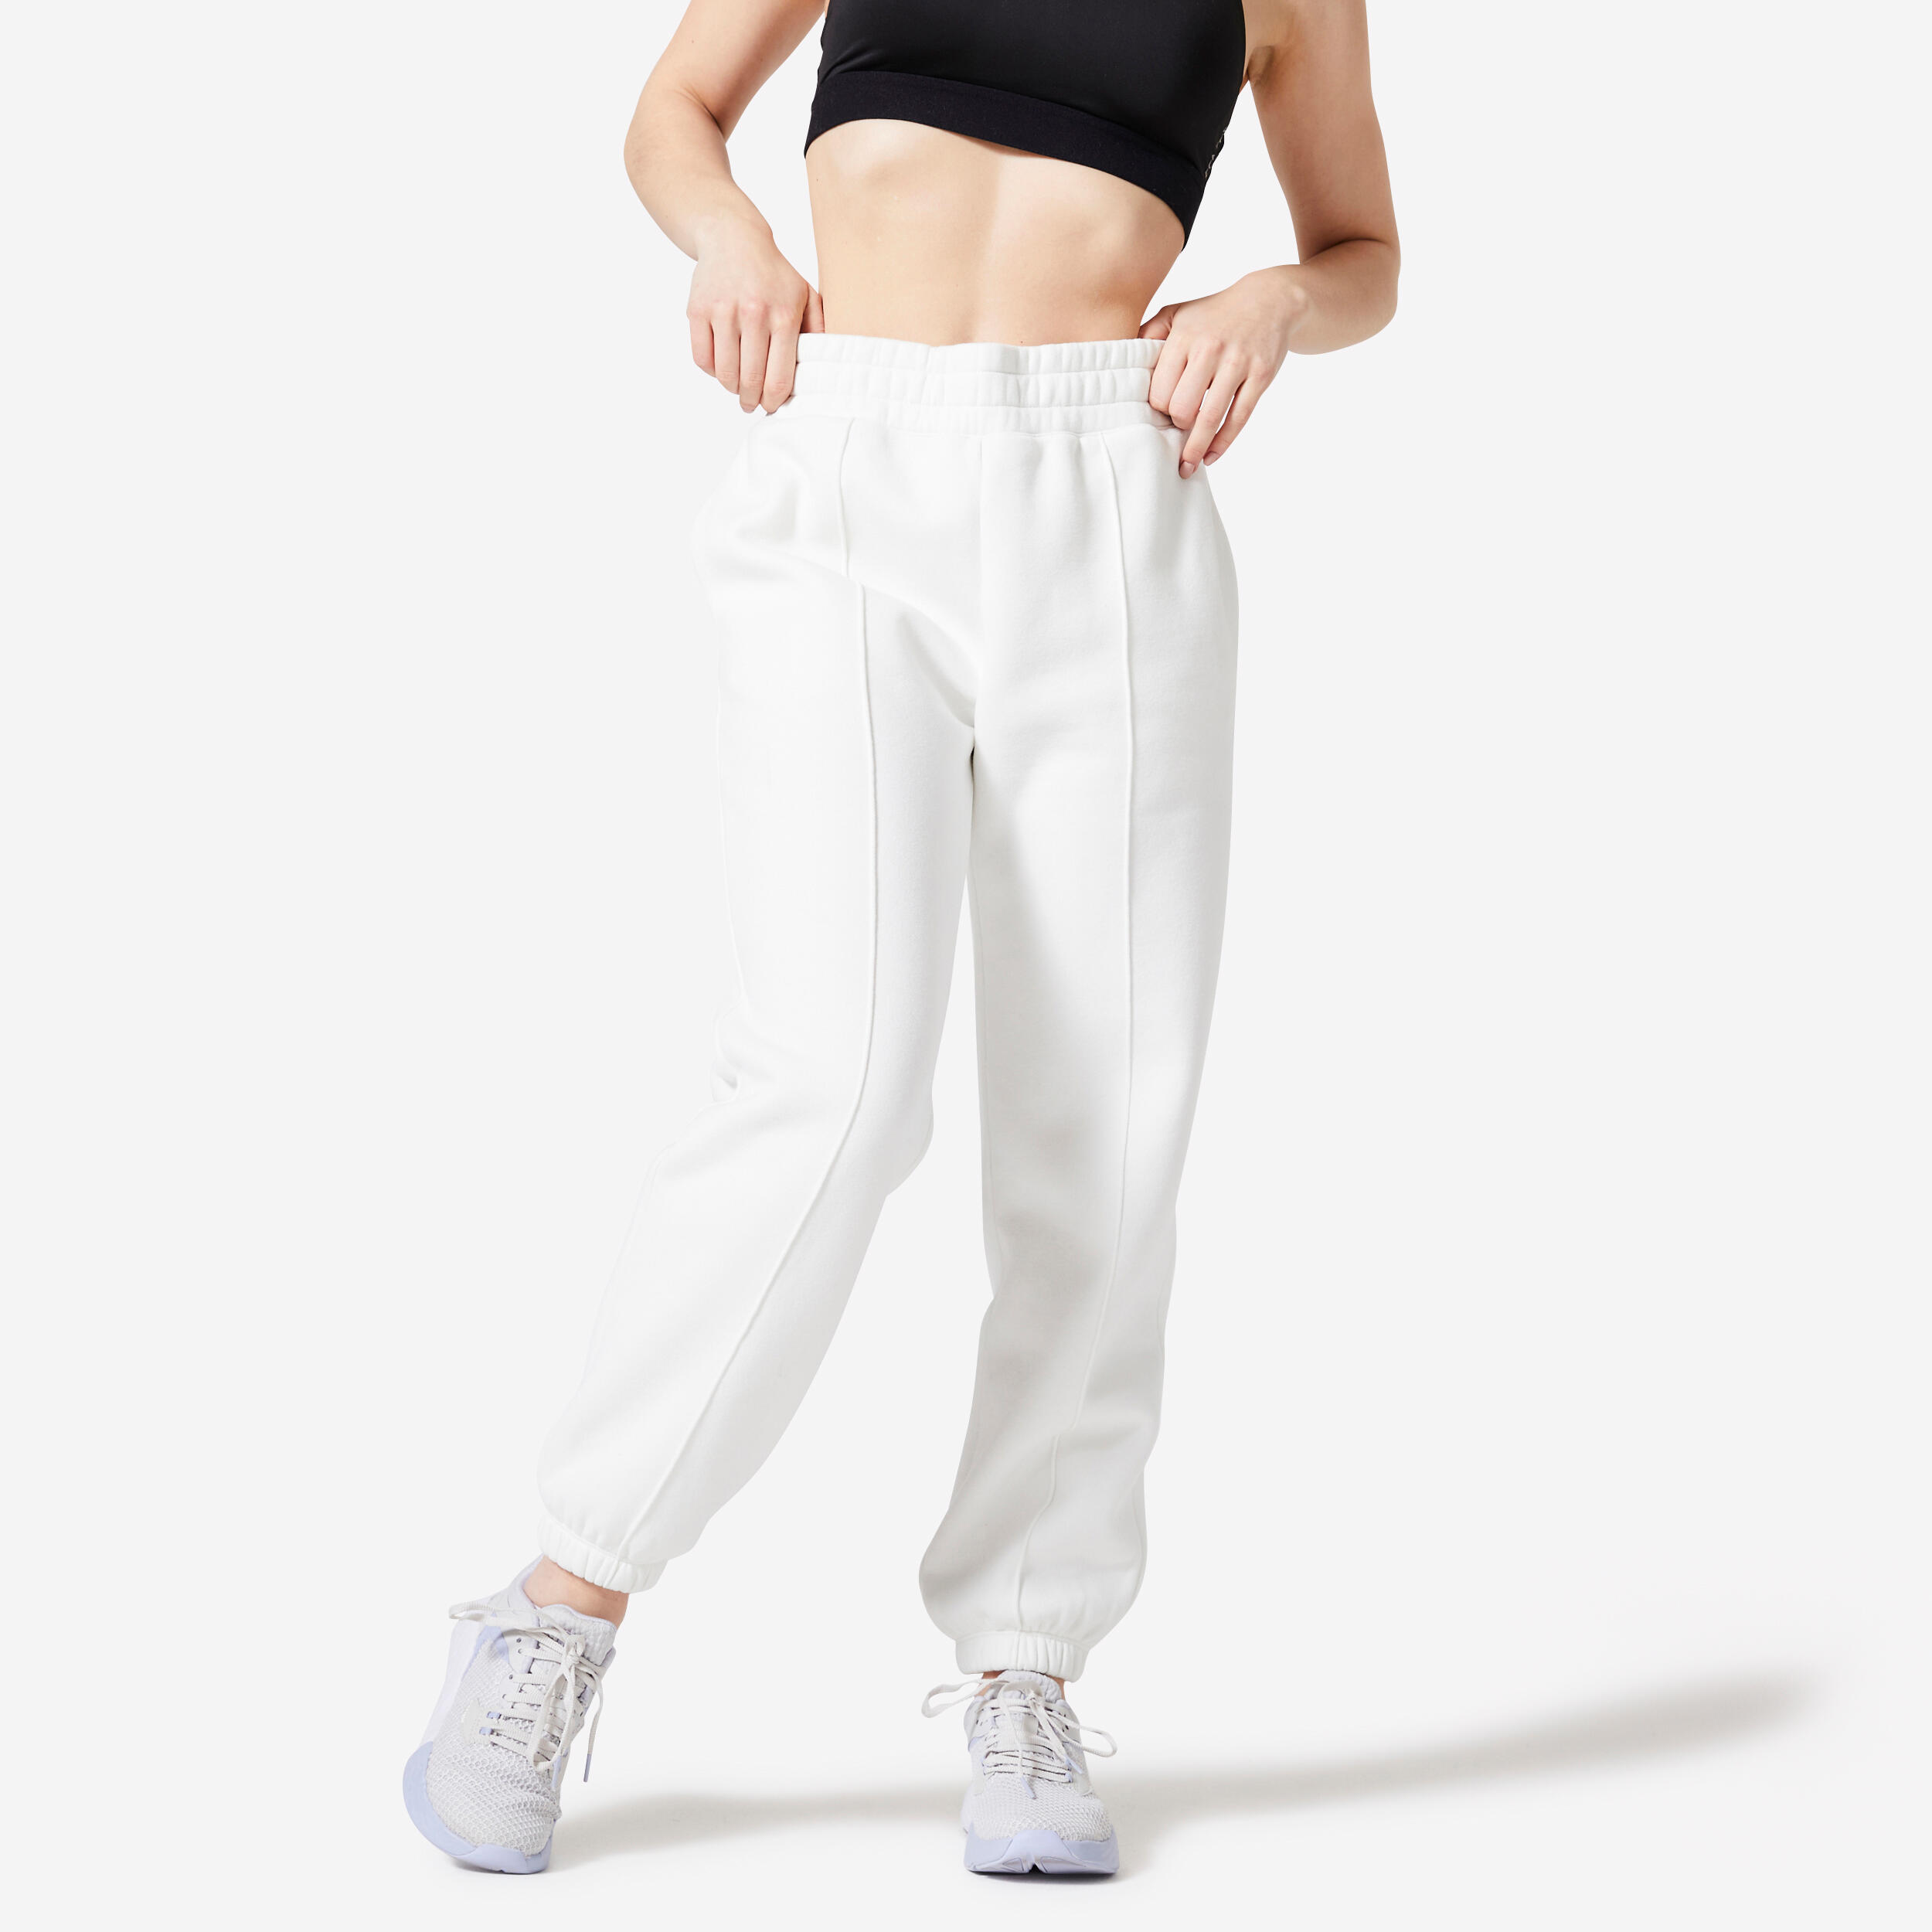 Pantalon de jogging - Blanc/Athletic Club - FEMME